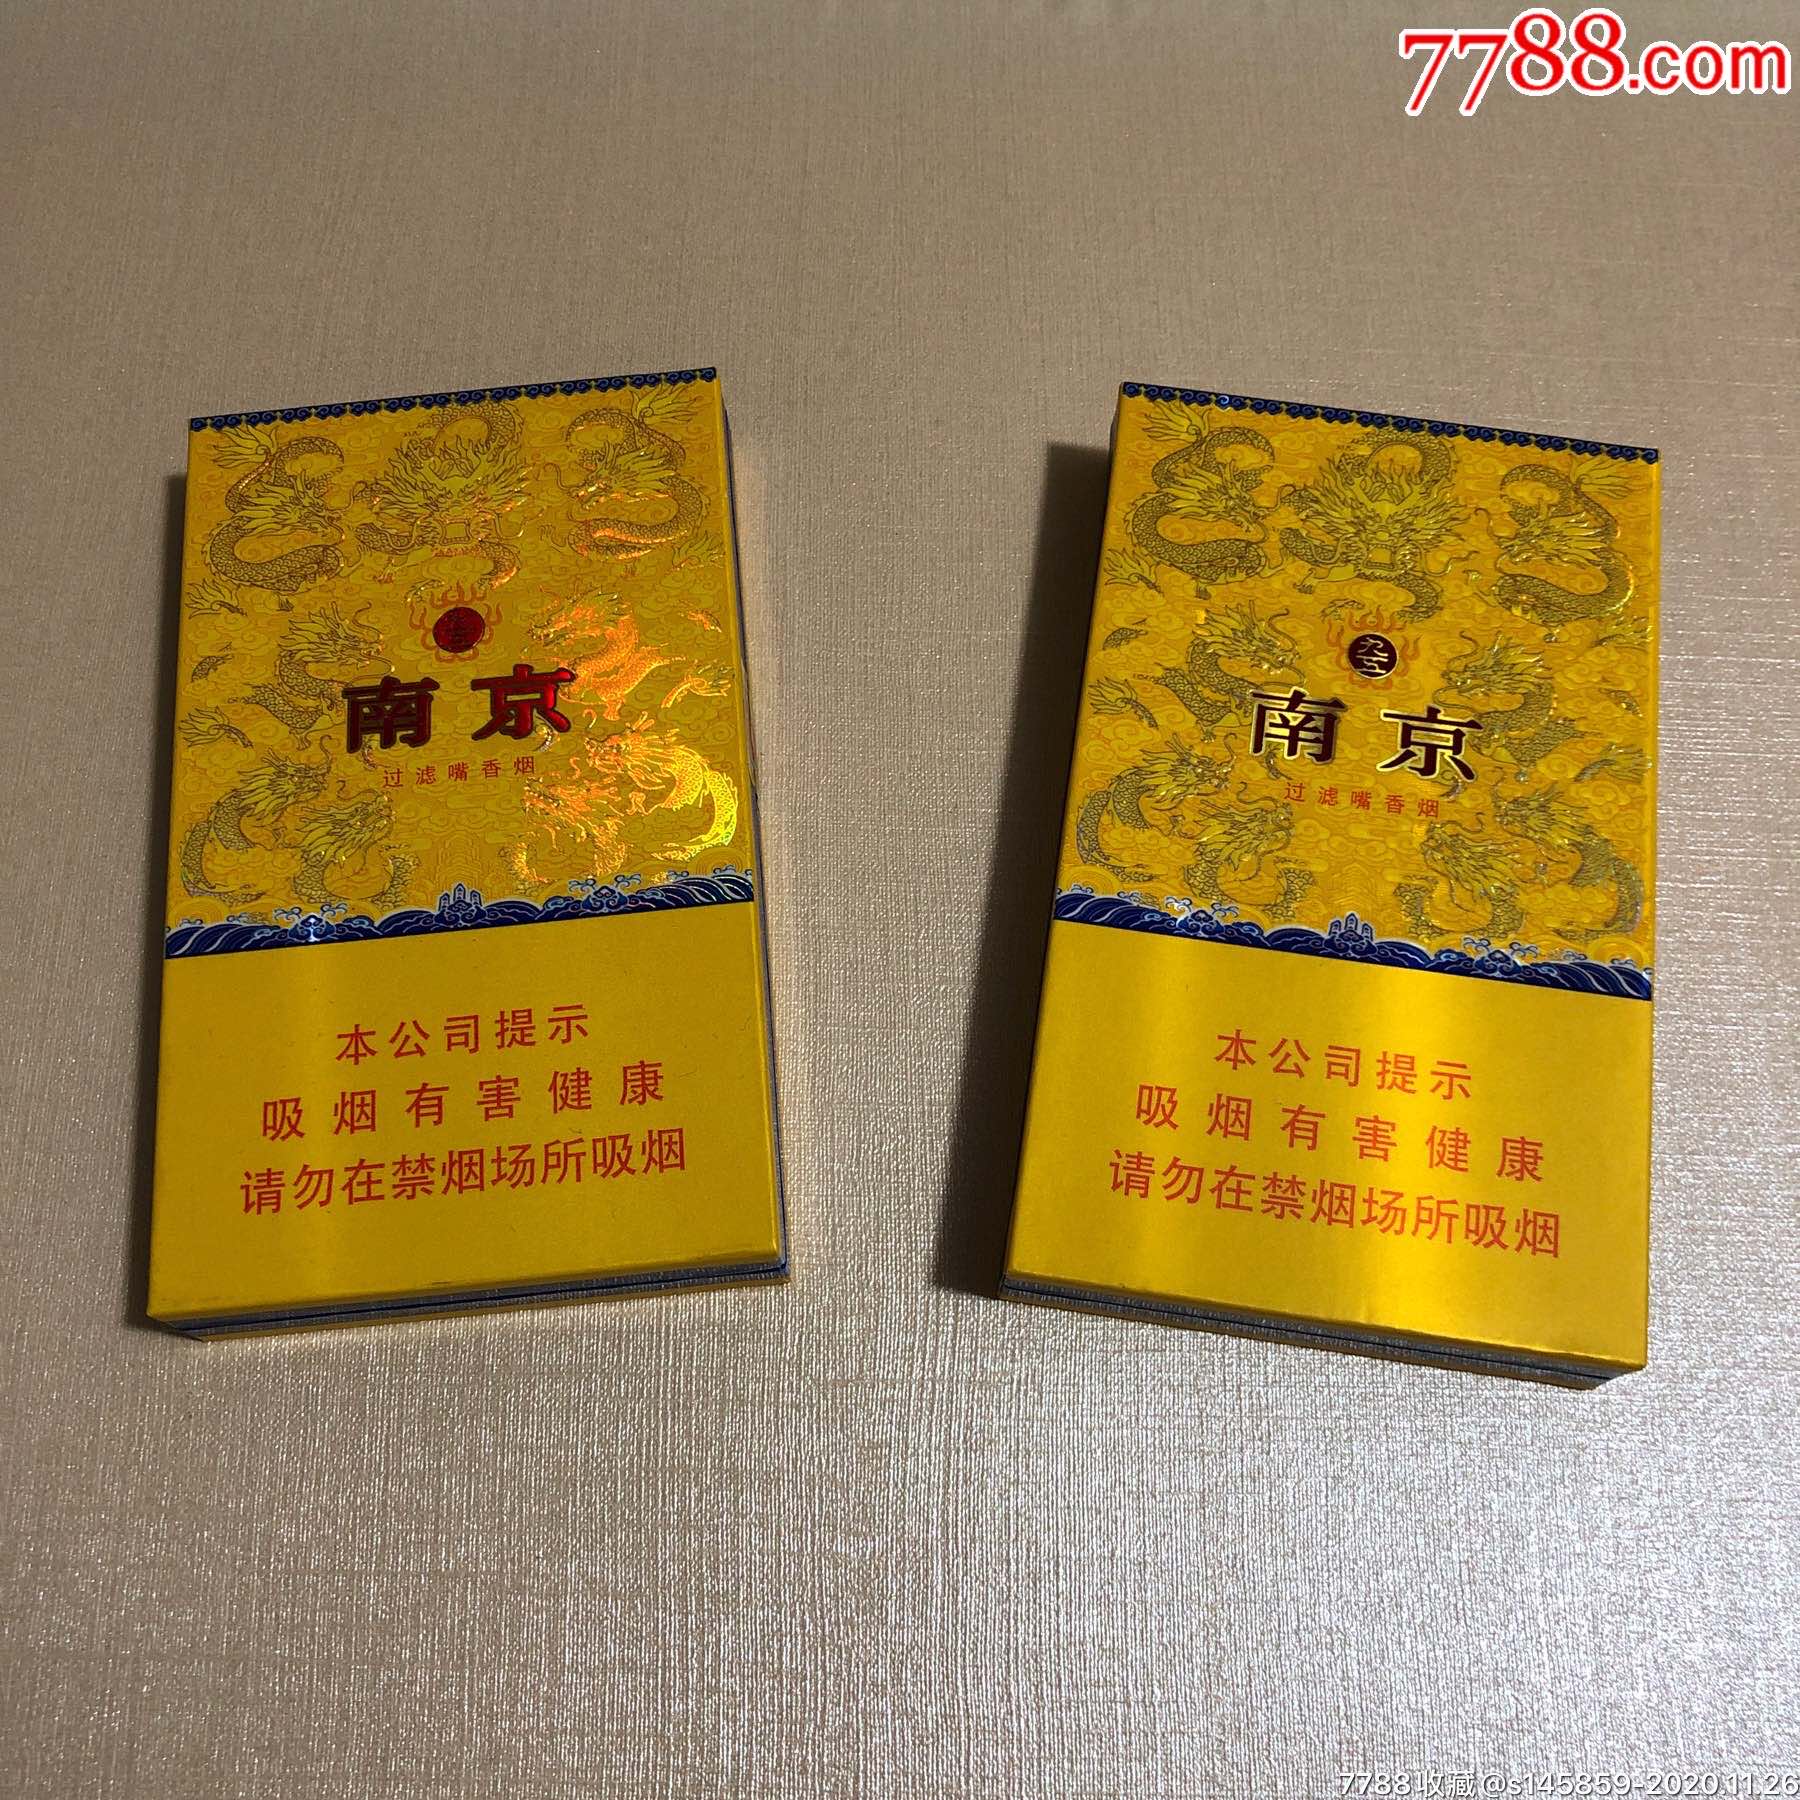 南京九五至尊是由江苏中烟工业有限公司下属的南京卷烟厂出品的香烟